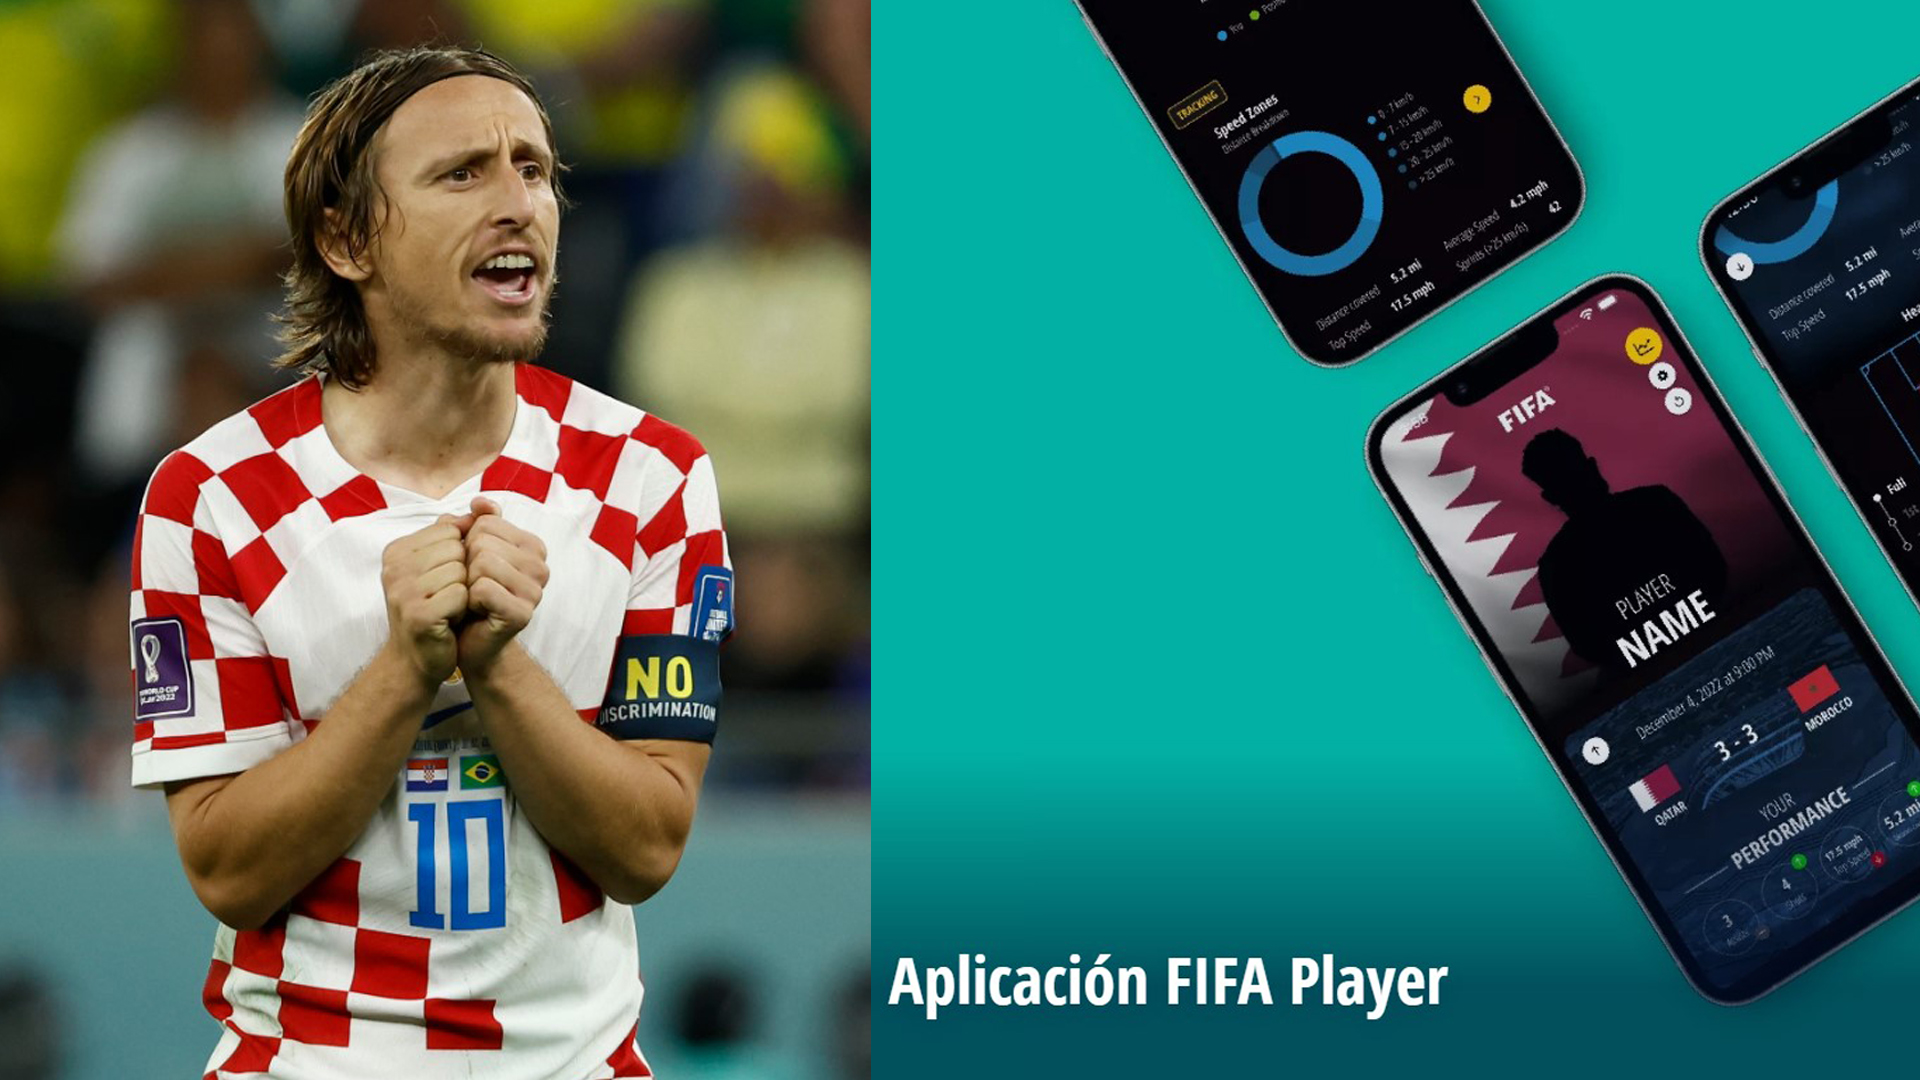 Modric y muchos otros jugadores ya utilizan la Fifa Player App para analizar su rendimiento después de cada partido. (Foto Prensa Libre: FIFA.COM)